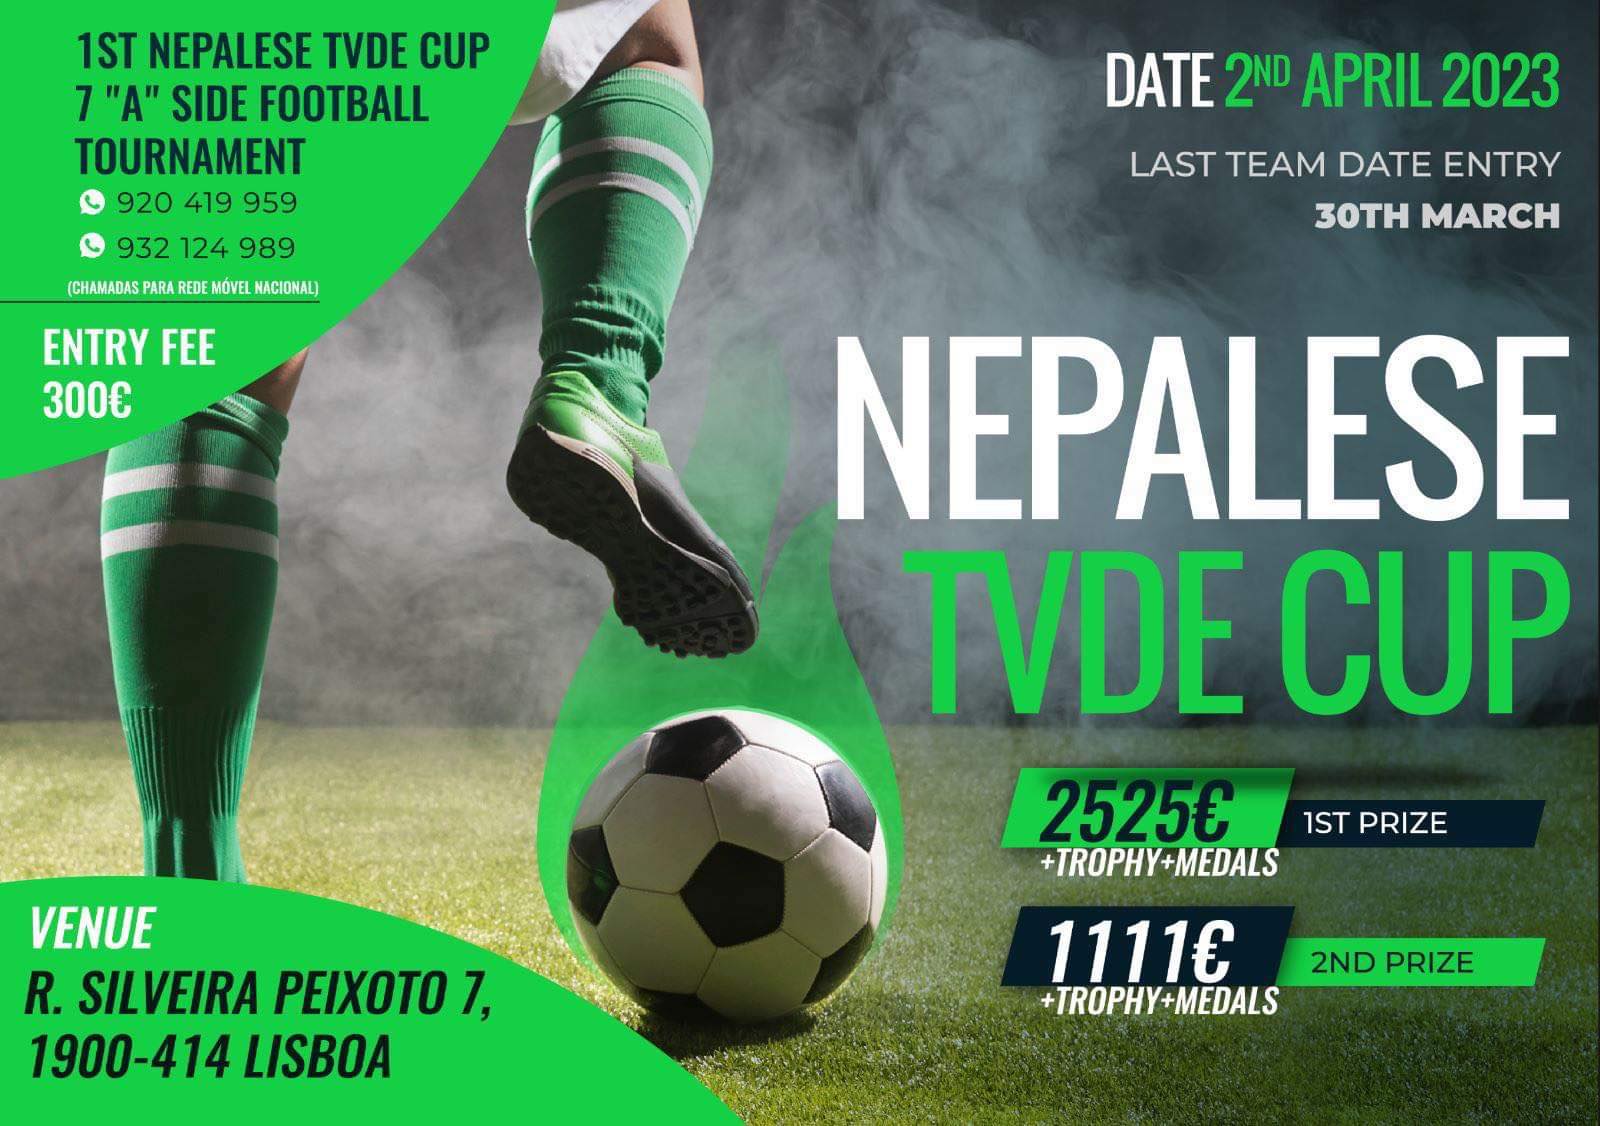 TVDE नेपाली ग्रुपले पोर्चुगलका नेपालीहरु बीच अहिलेसम्म कै ठूलो राशी पुरस्कारको फुटबल प्रतियोगिता आयोजना गर्दै